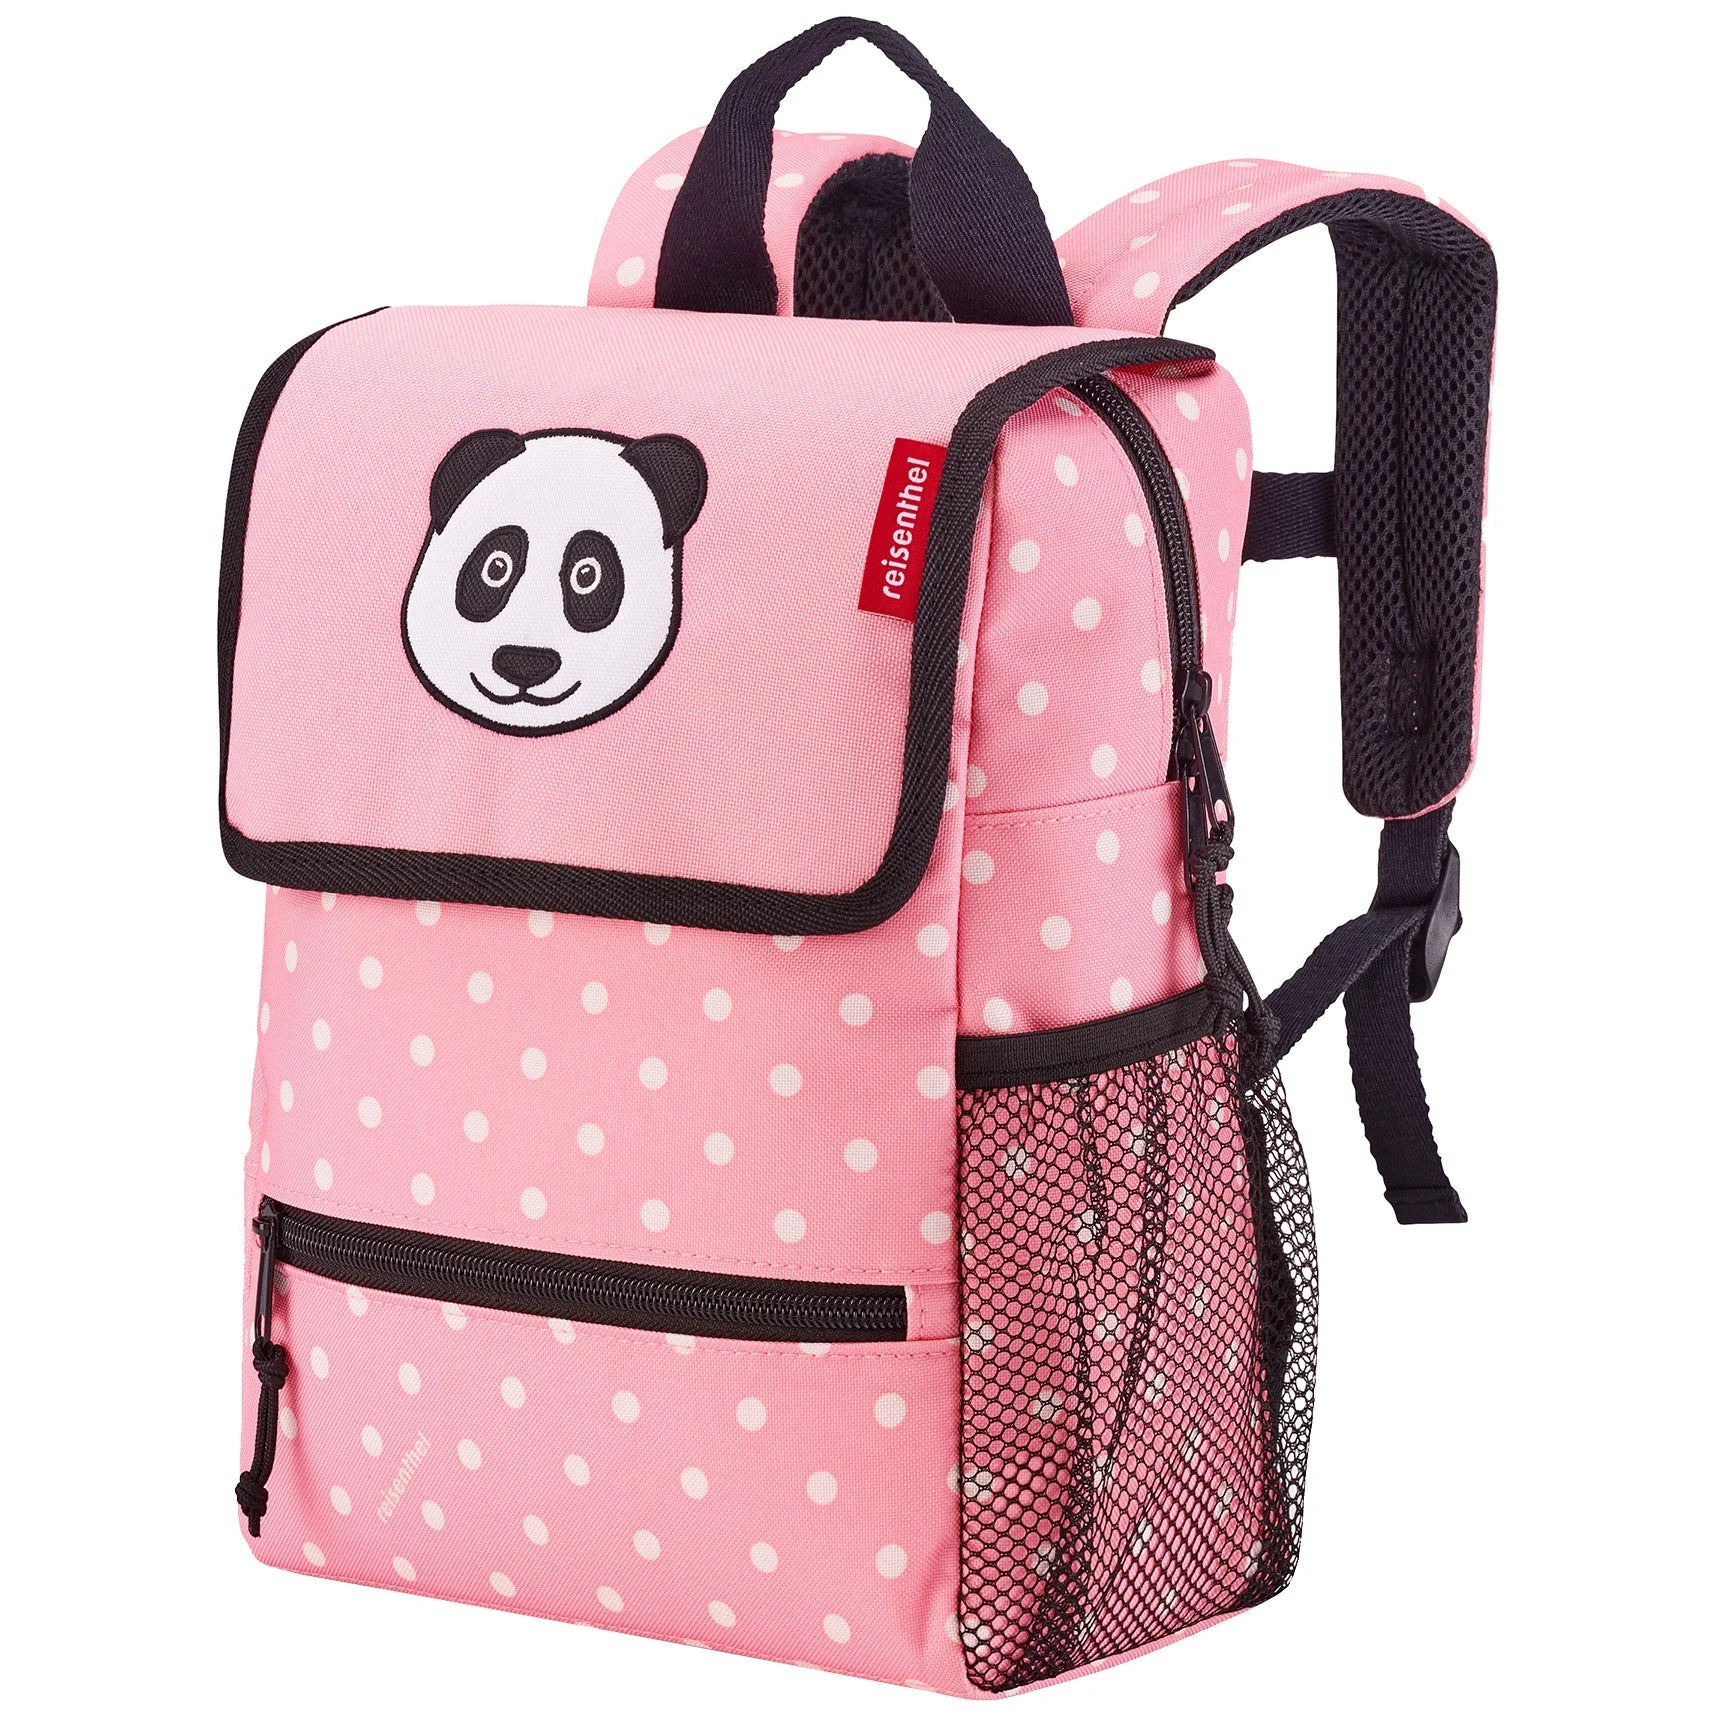 Reisenthel Kids Backpack Sac à dos 28 cm - panda à pois rose